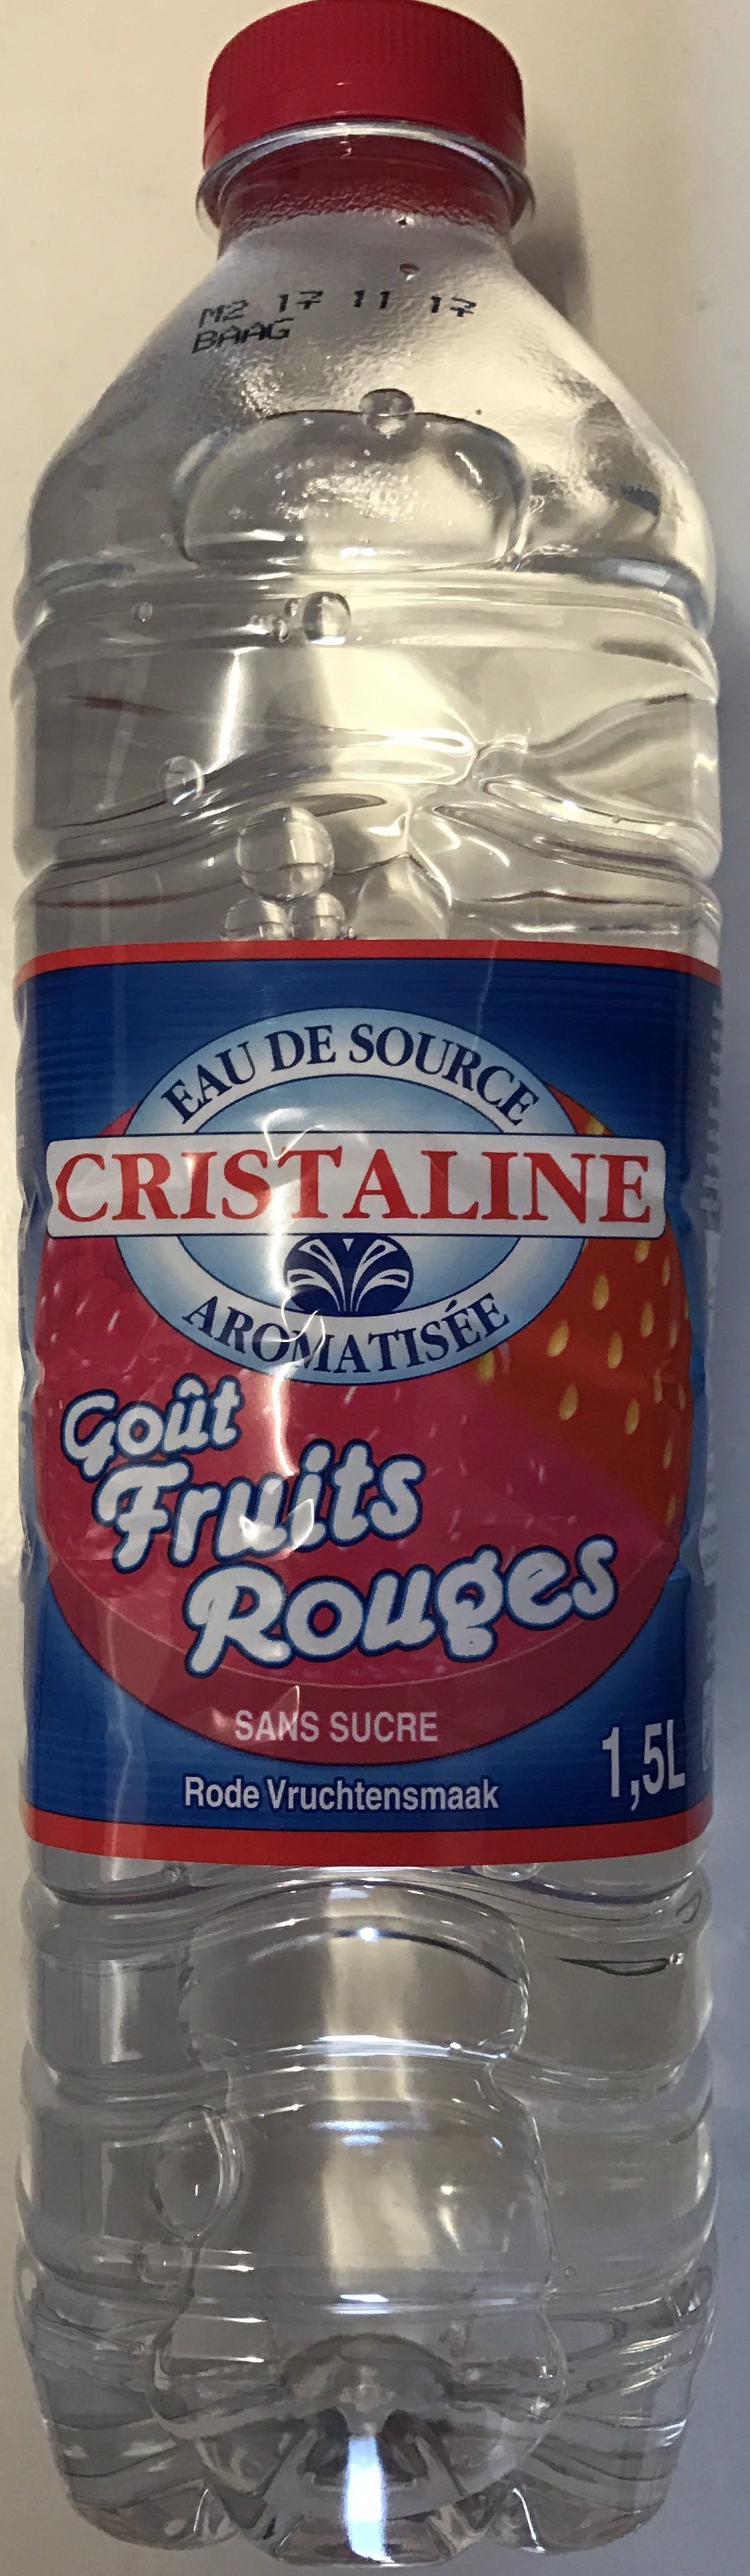 Goût Fruits Rouges - Product - fr